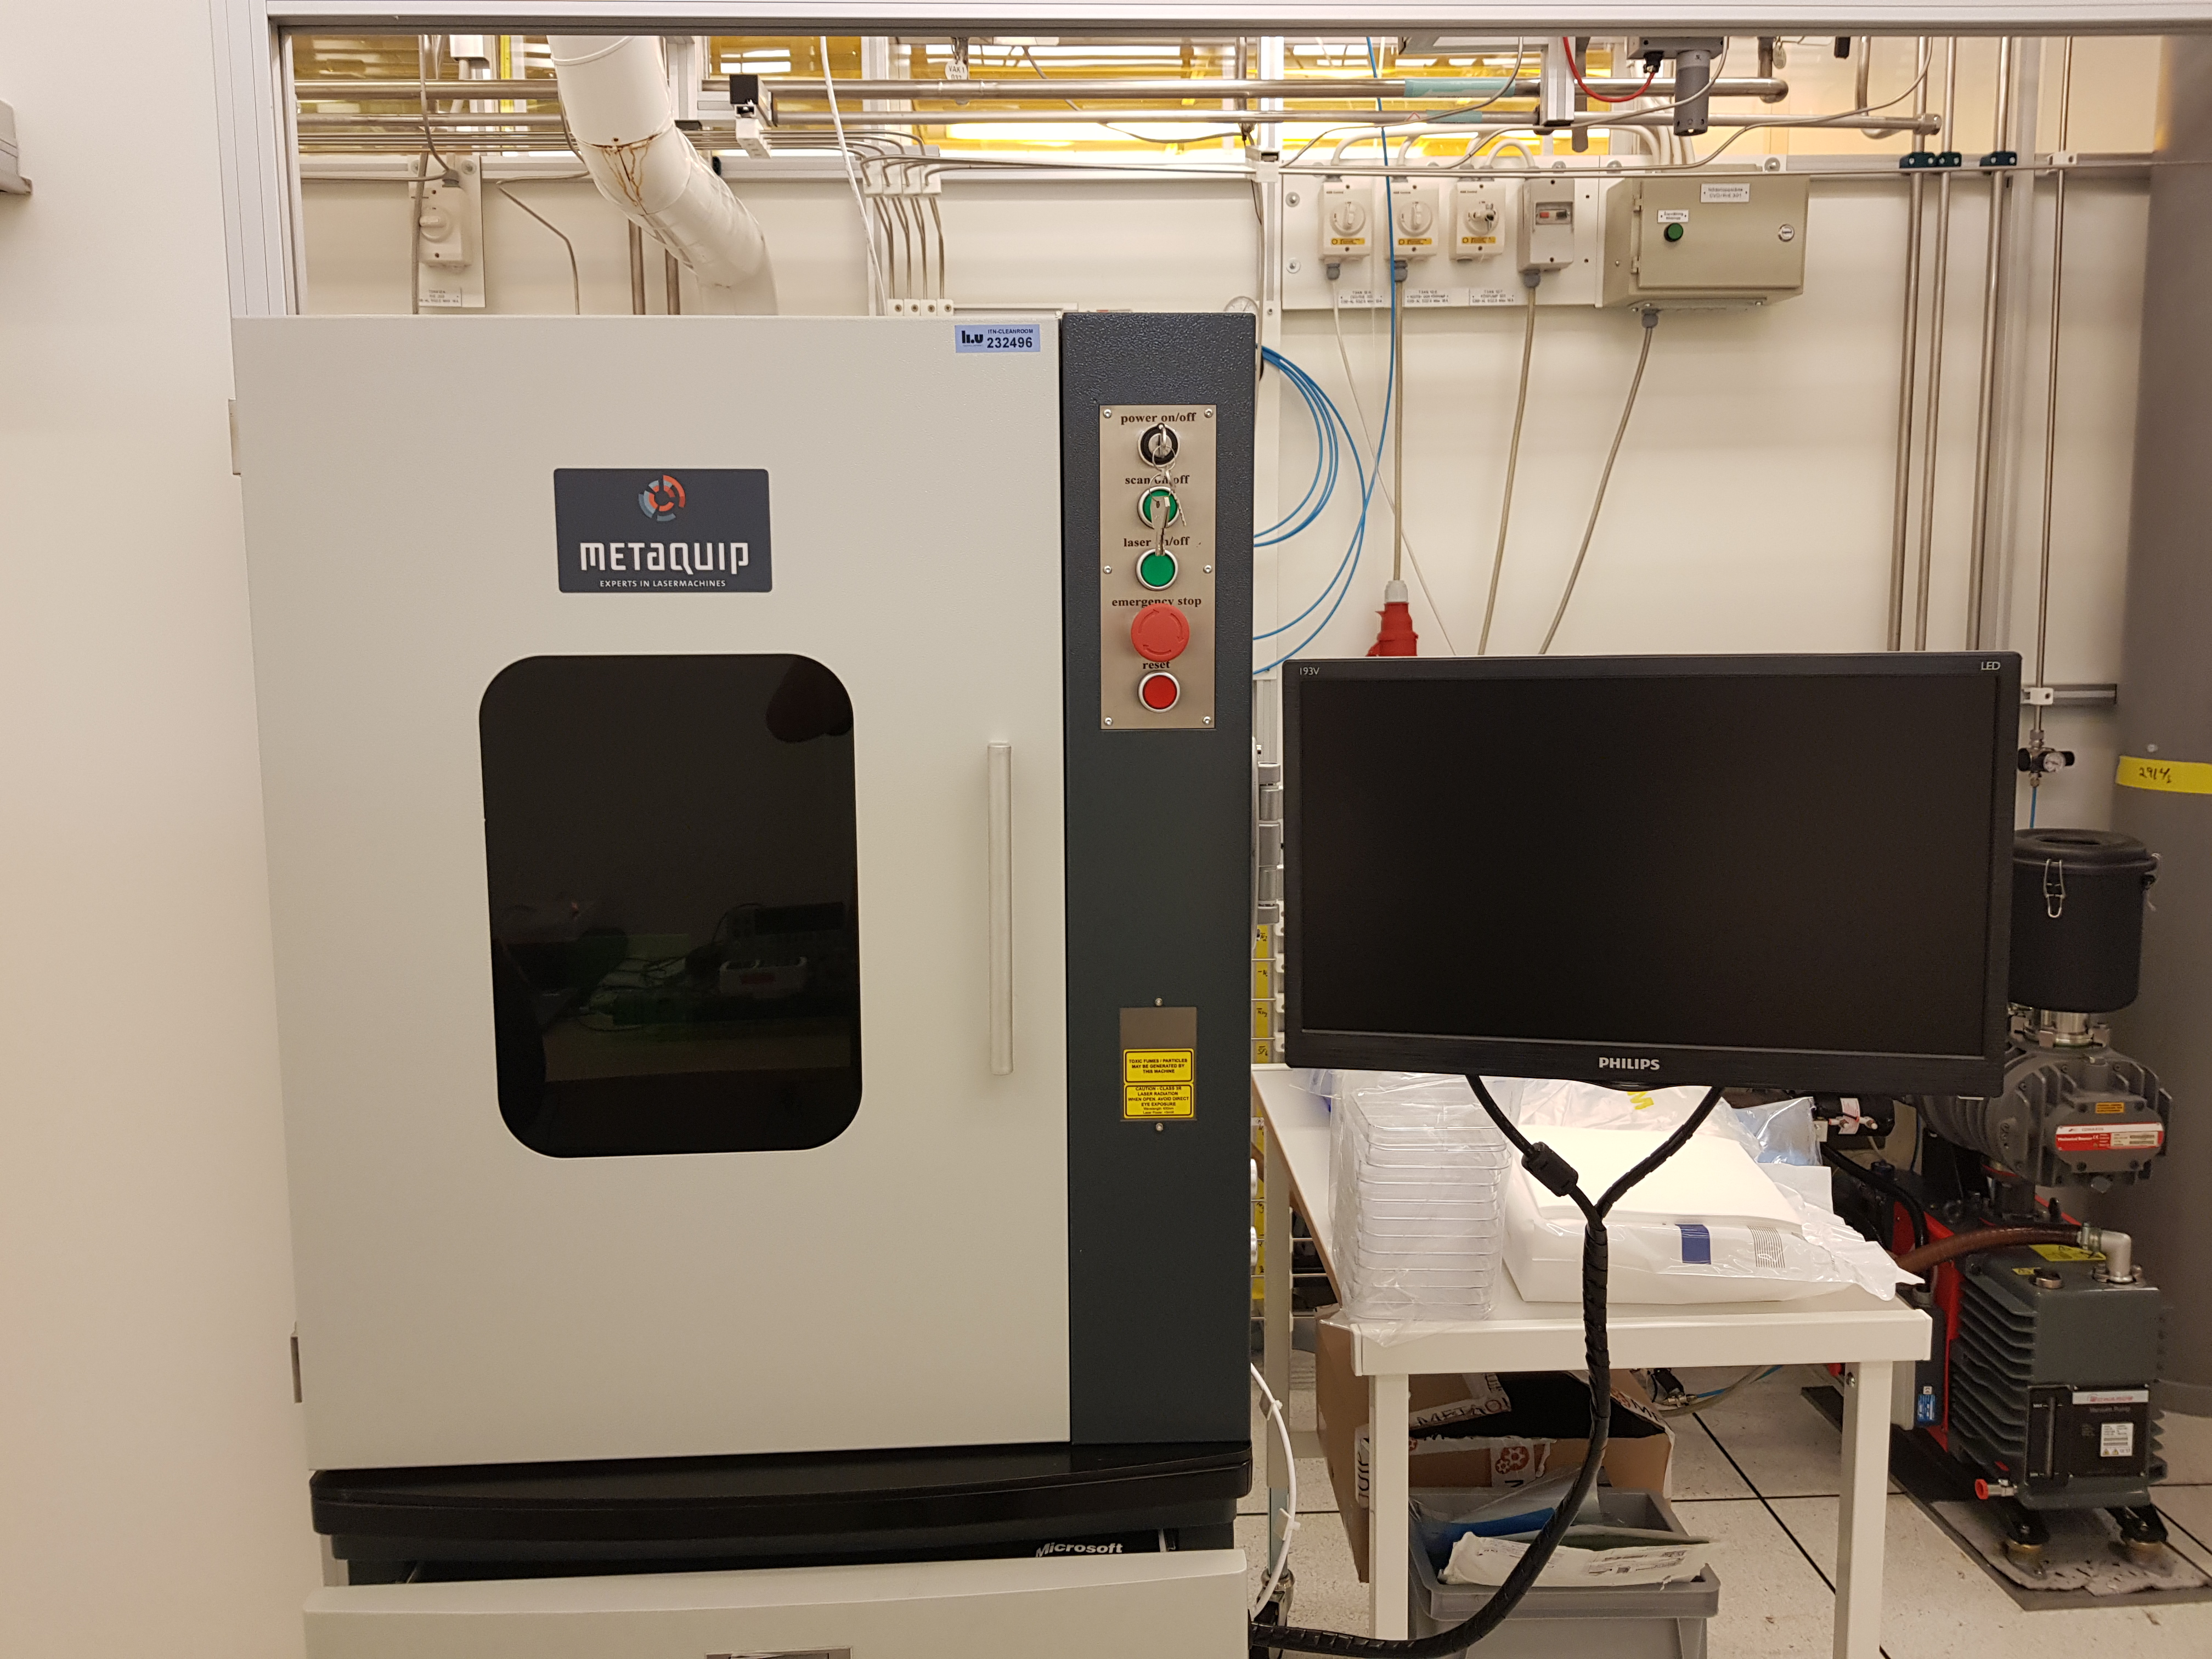 Picture of MetaQuip Laser engraving machine